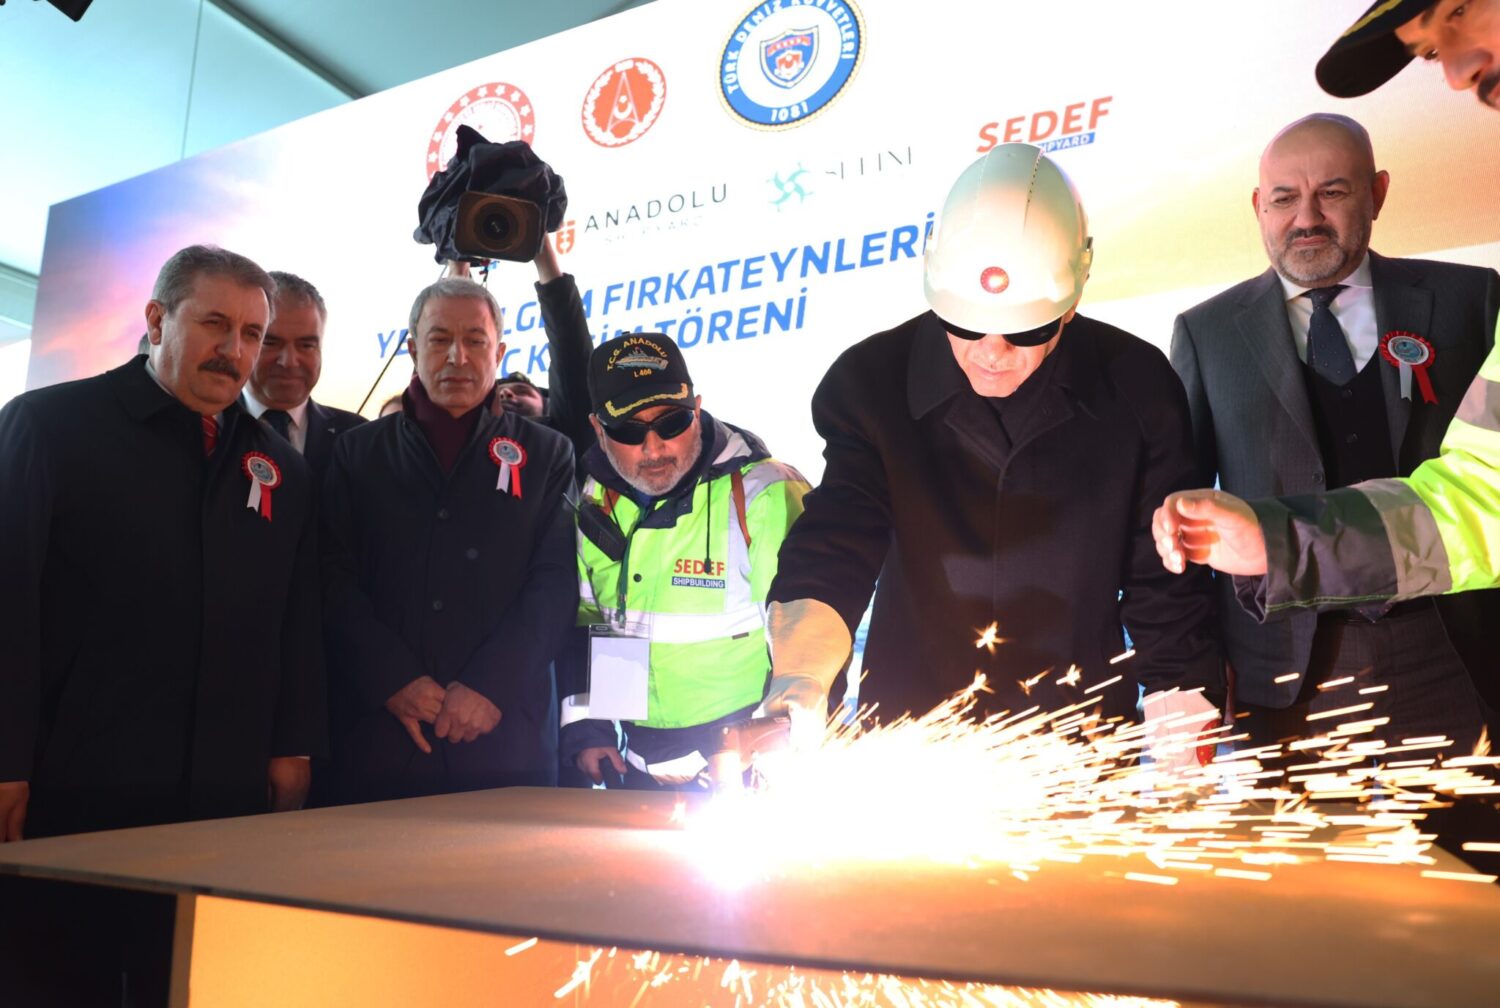 Cumhurbaşkanı Recep Tayyip Erdoğan, Tuzla'da düzenlenen TCG Anadolu Gemisi Teslim Töreni ve Yeni MİLGEM Fırkateynleri Sac Kesme Töreni'ne katıldı. Erdoğan, Türkiye'nin gemi tasarımı, geliştirme, inşa ve bakımını yapan 10 ülkeden biri olmasının, sadece bir slogan olmadığını, aynı zamanda gurur verici bir başarı olduğunu ifade etti.